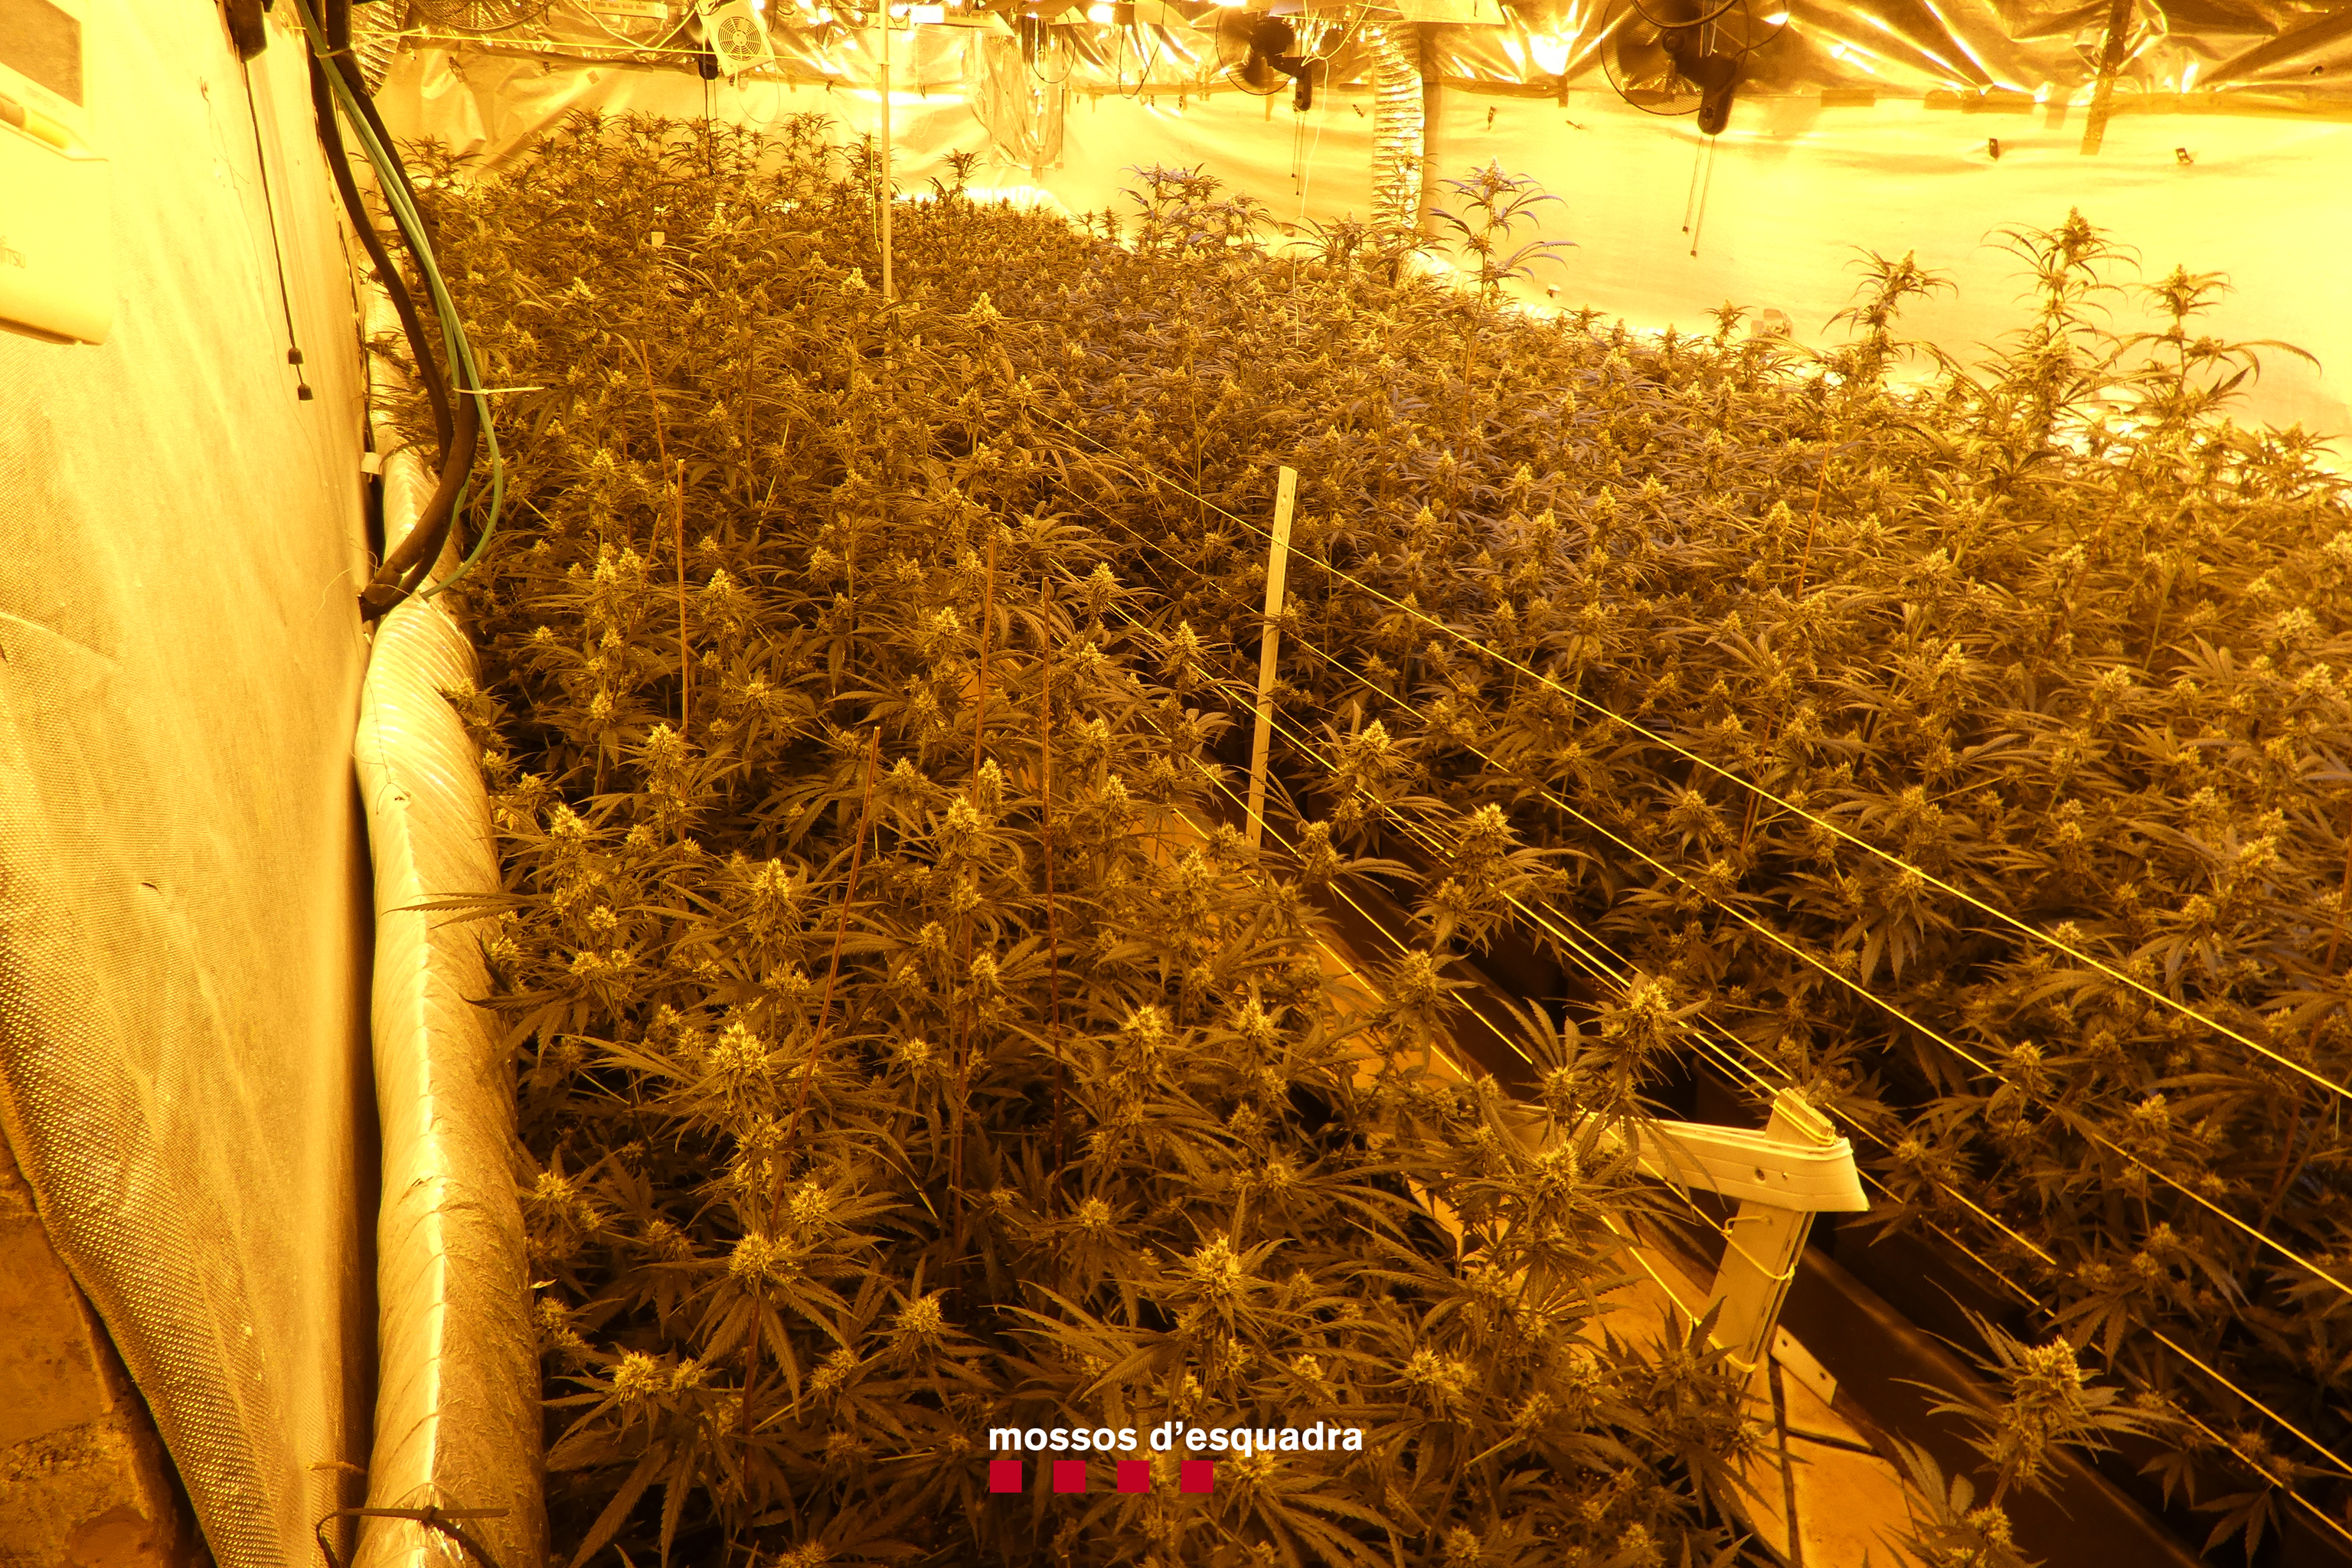 Cae una banda de narcotraficantes que franquiciaba plantaciones de marihuana en casas aisladas